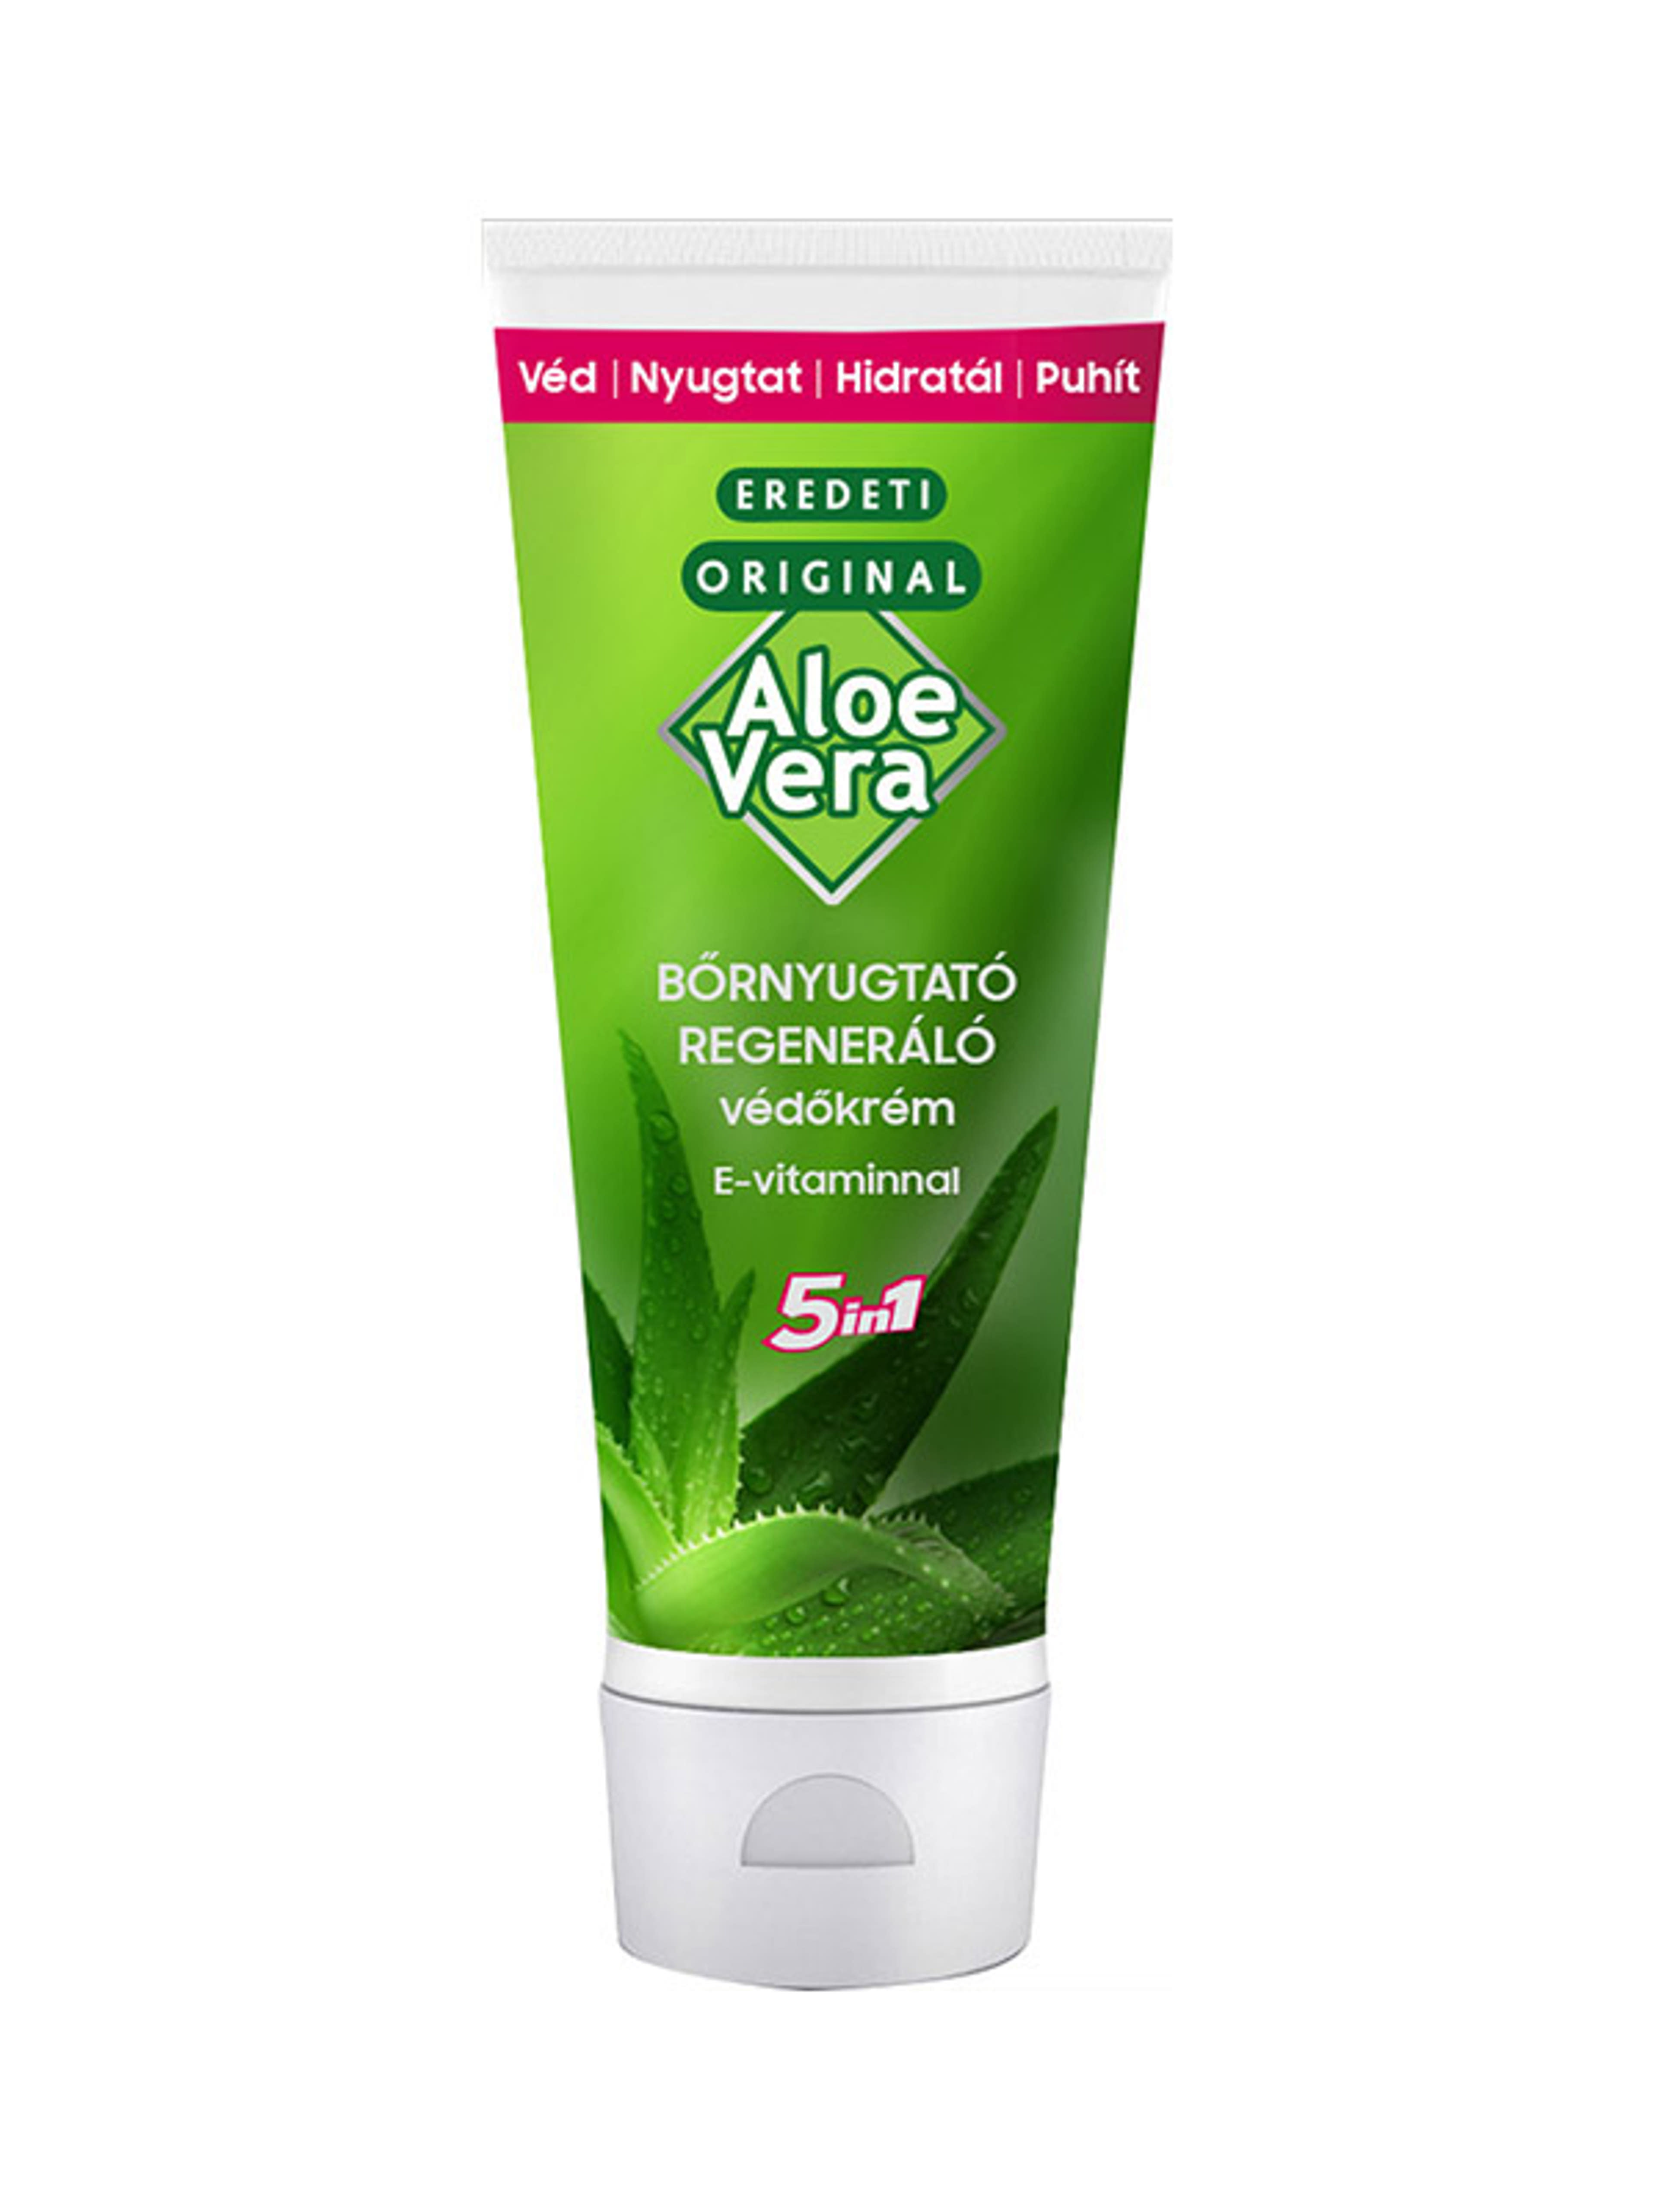 Eredeti Aloe Vera bőrnyugtató védőkrém 5 in 1 - 100 ml-1